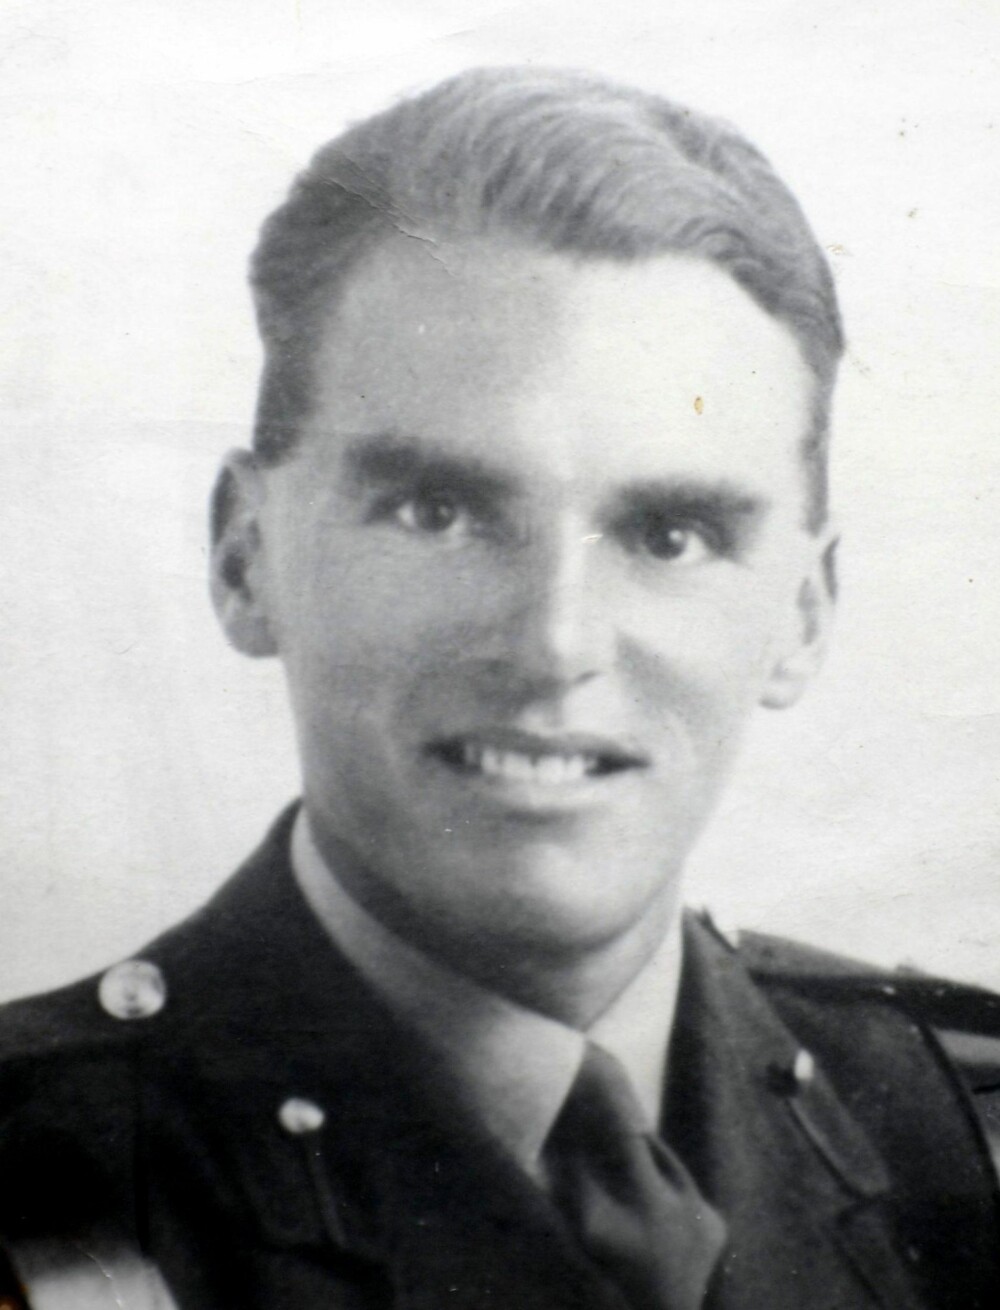 Løytnant Den Brotheridge fotografert i 1944.